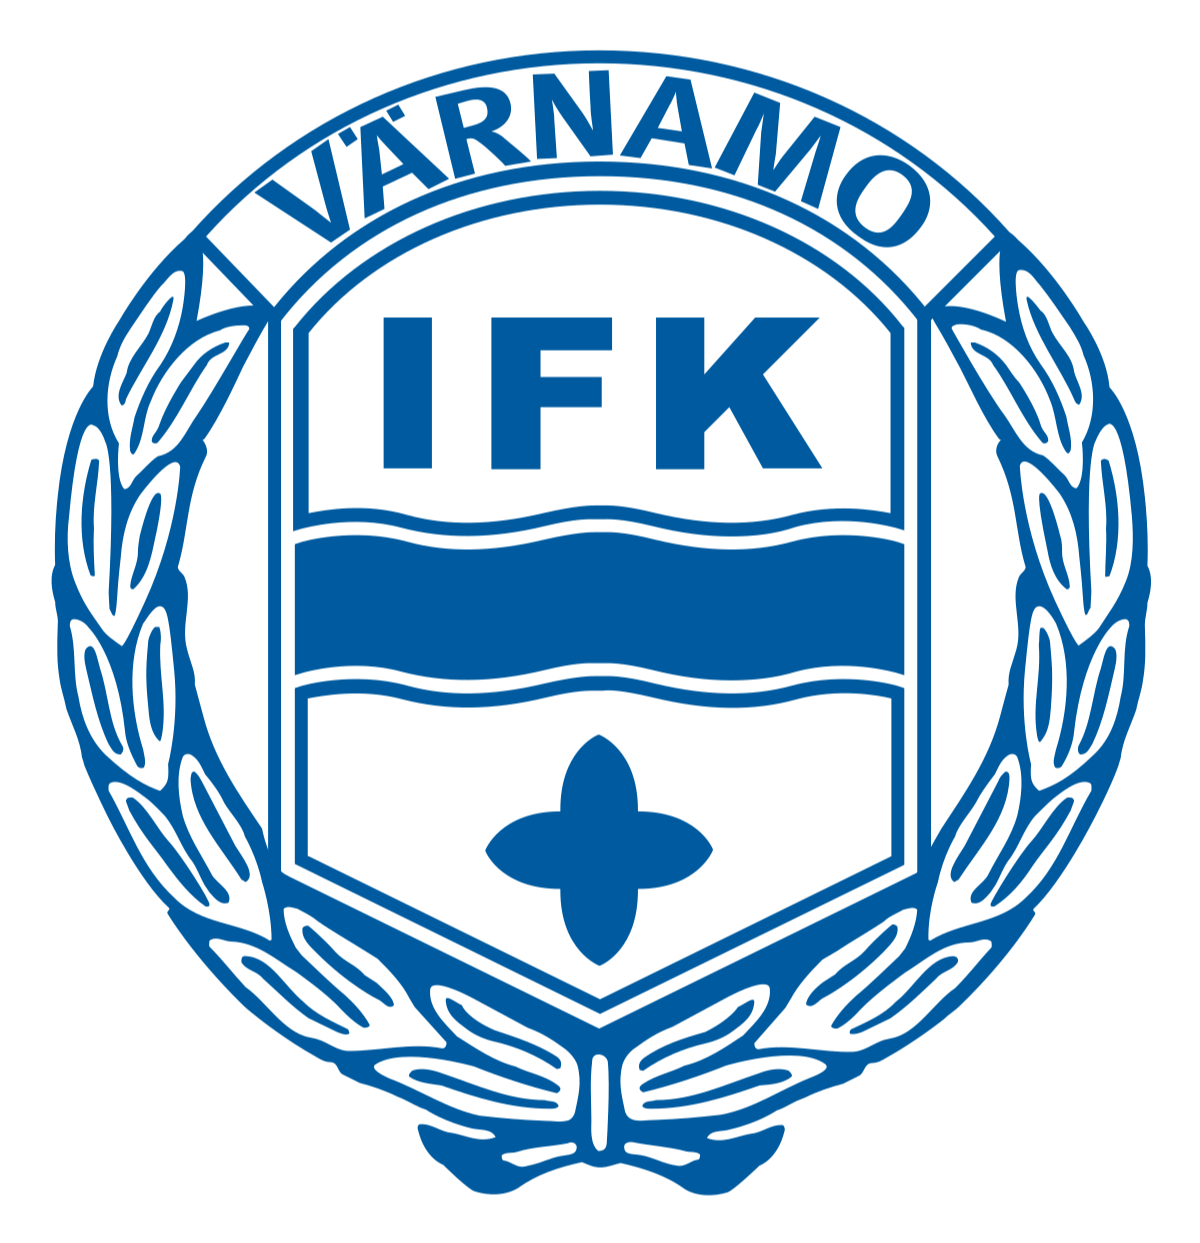 IFK瓦纳默logo